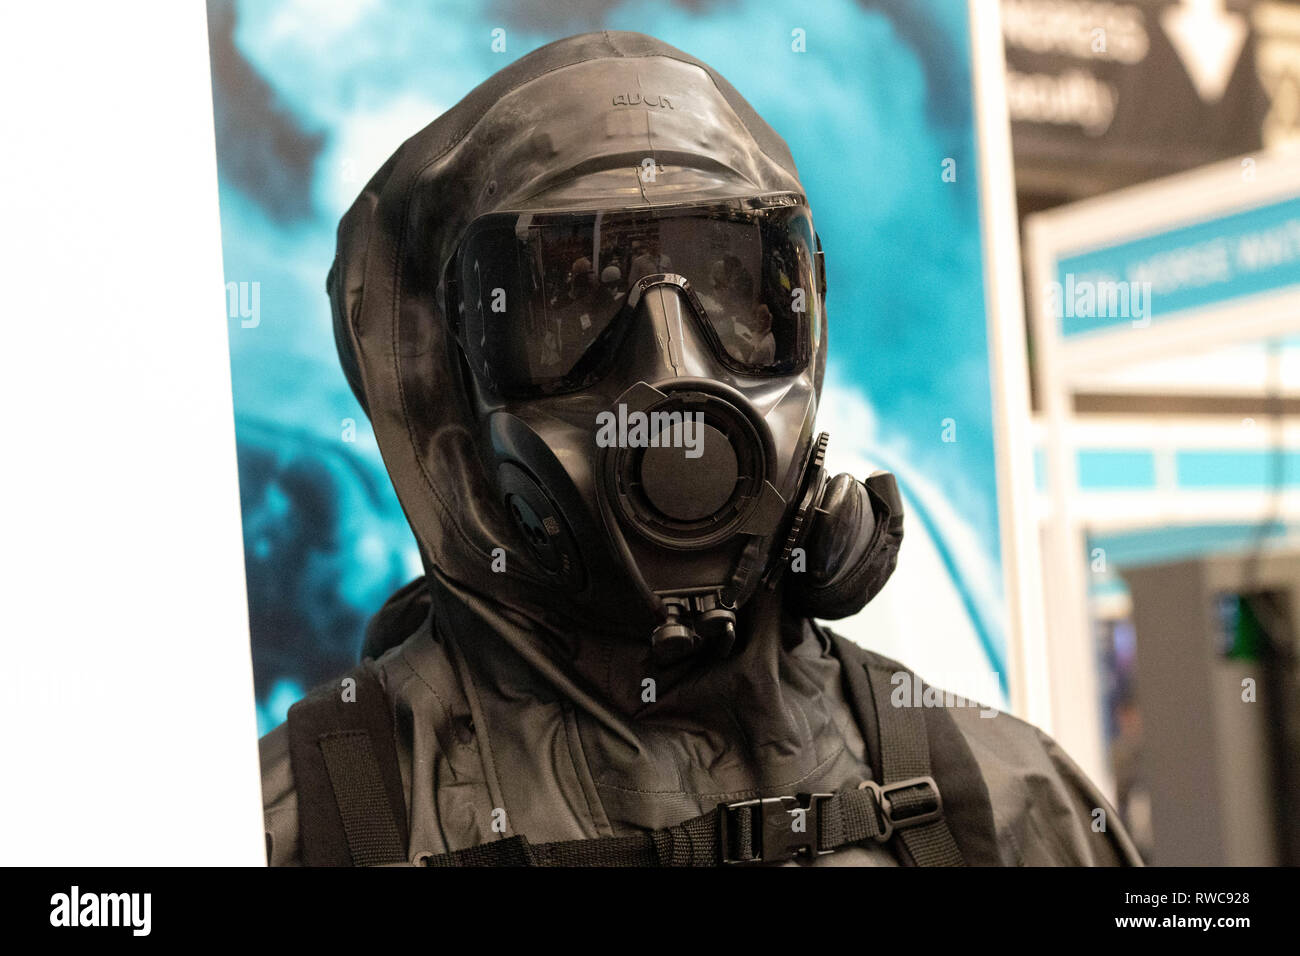 Londres 6 mars 2019 Sécurité et Counter Terror Expo 2019 à Olympia Londres, d'un masque respiratoire pour l'industrie chimique, biologique et nucléaire attack protection Crédit : Ian Davidson/Alamy Live News Banque D'Images